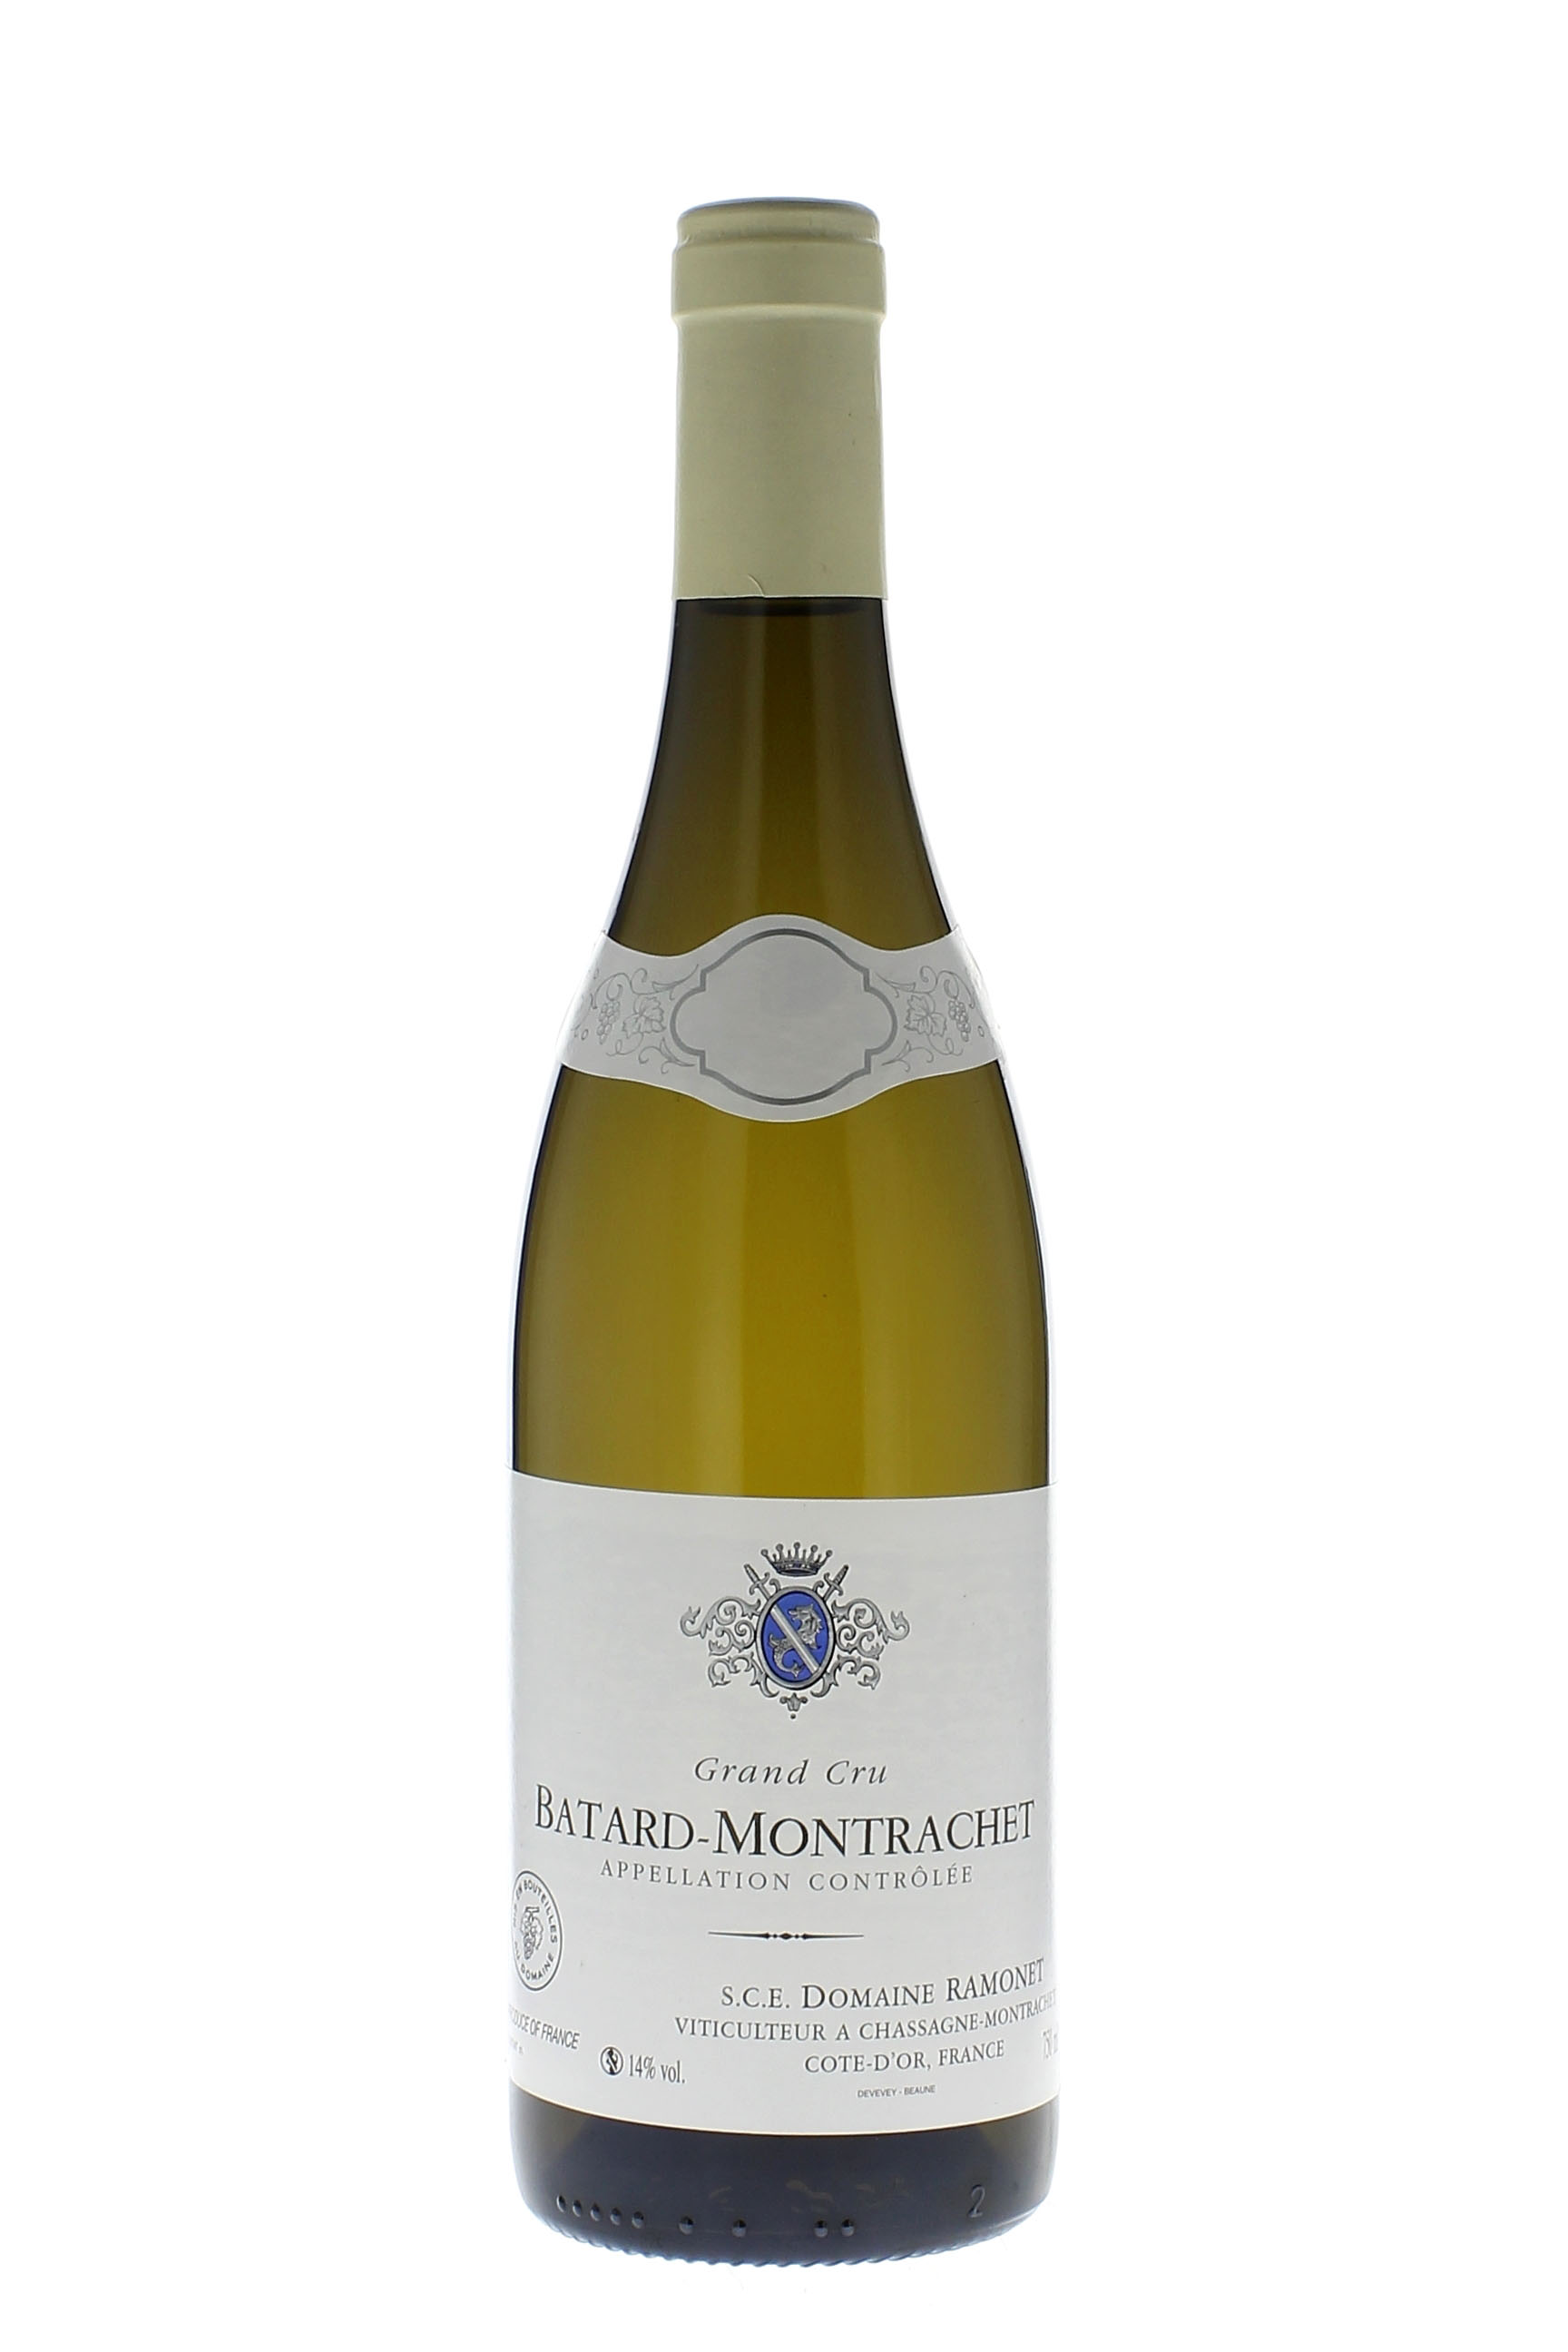 Batard montrachet 2000 Domaine RAMONET, Bourgogne blanc